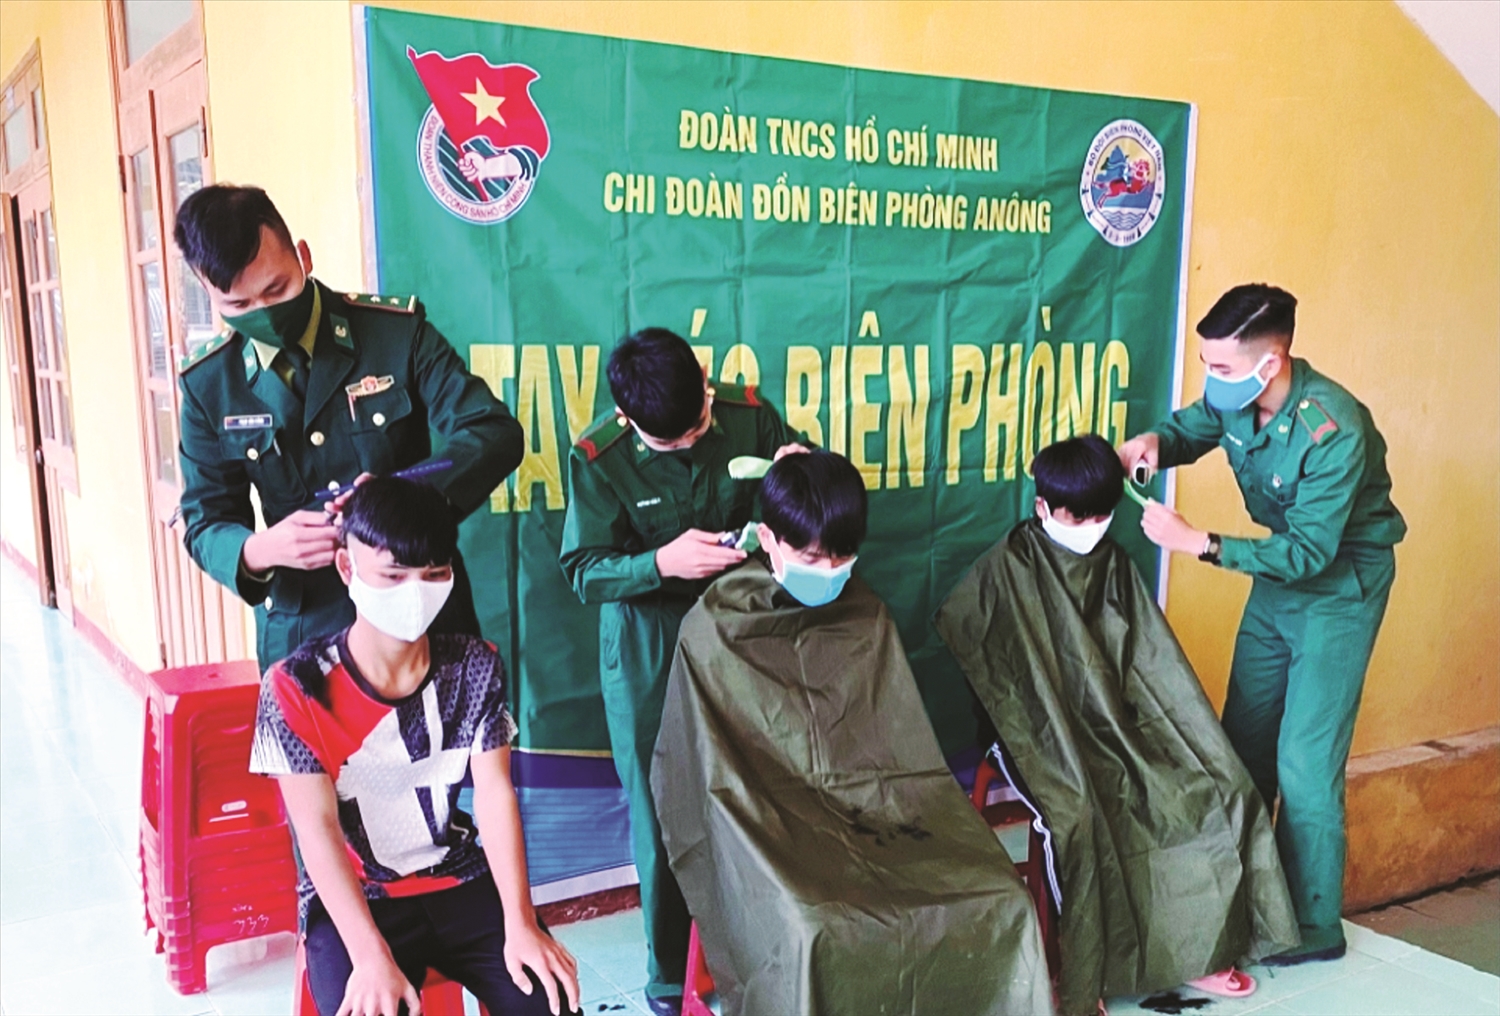 Mô hình “Tay kéo biên phòng” cắt tóc cho các em học sinh DTTS được Đồn Biên phòng A Nông triển khai hơn 3 năm nay.